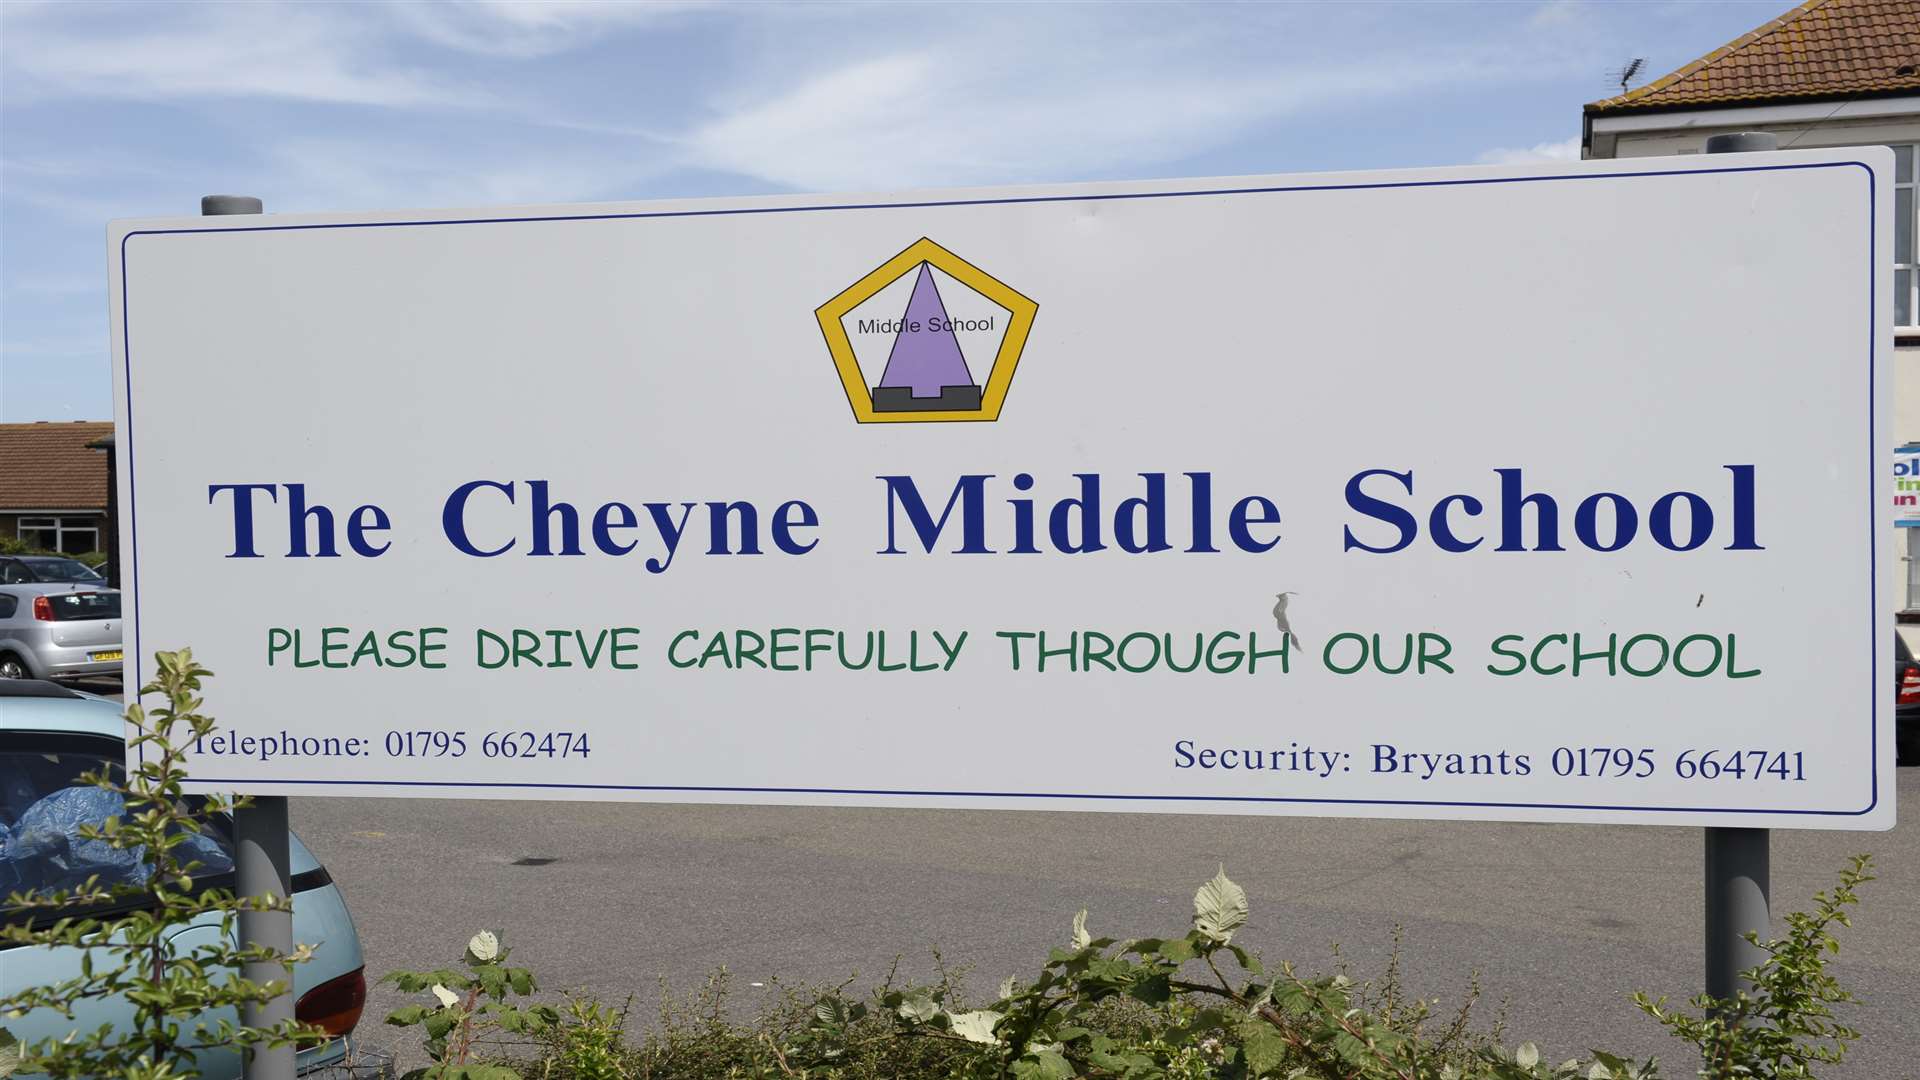 The former Cheyne Middle School